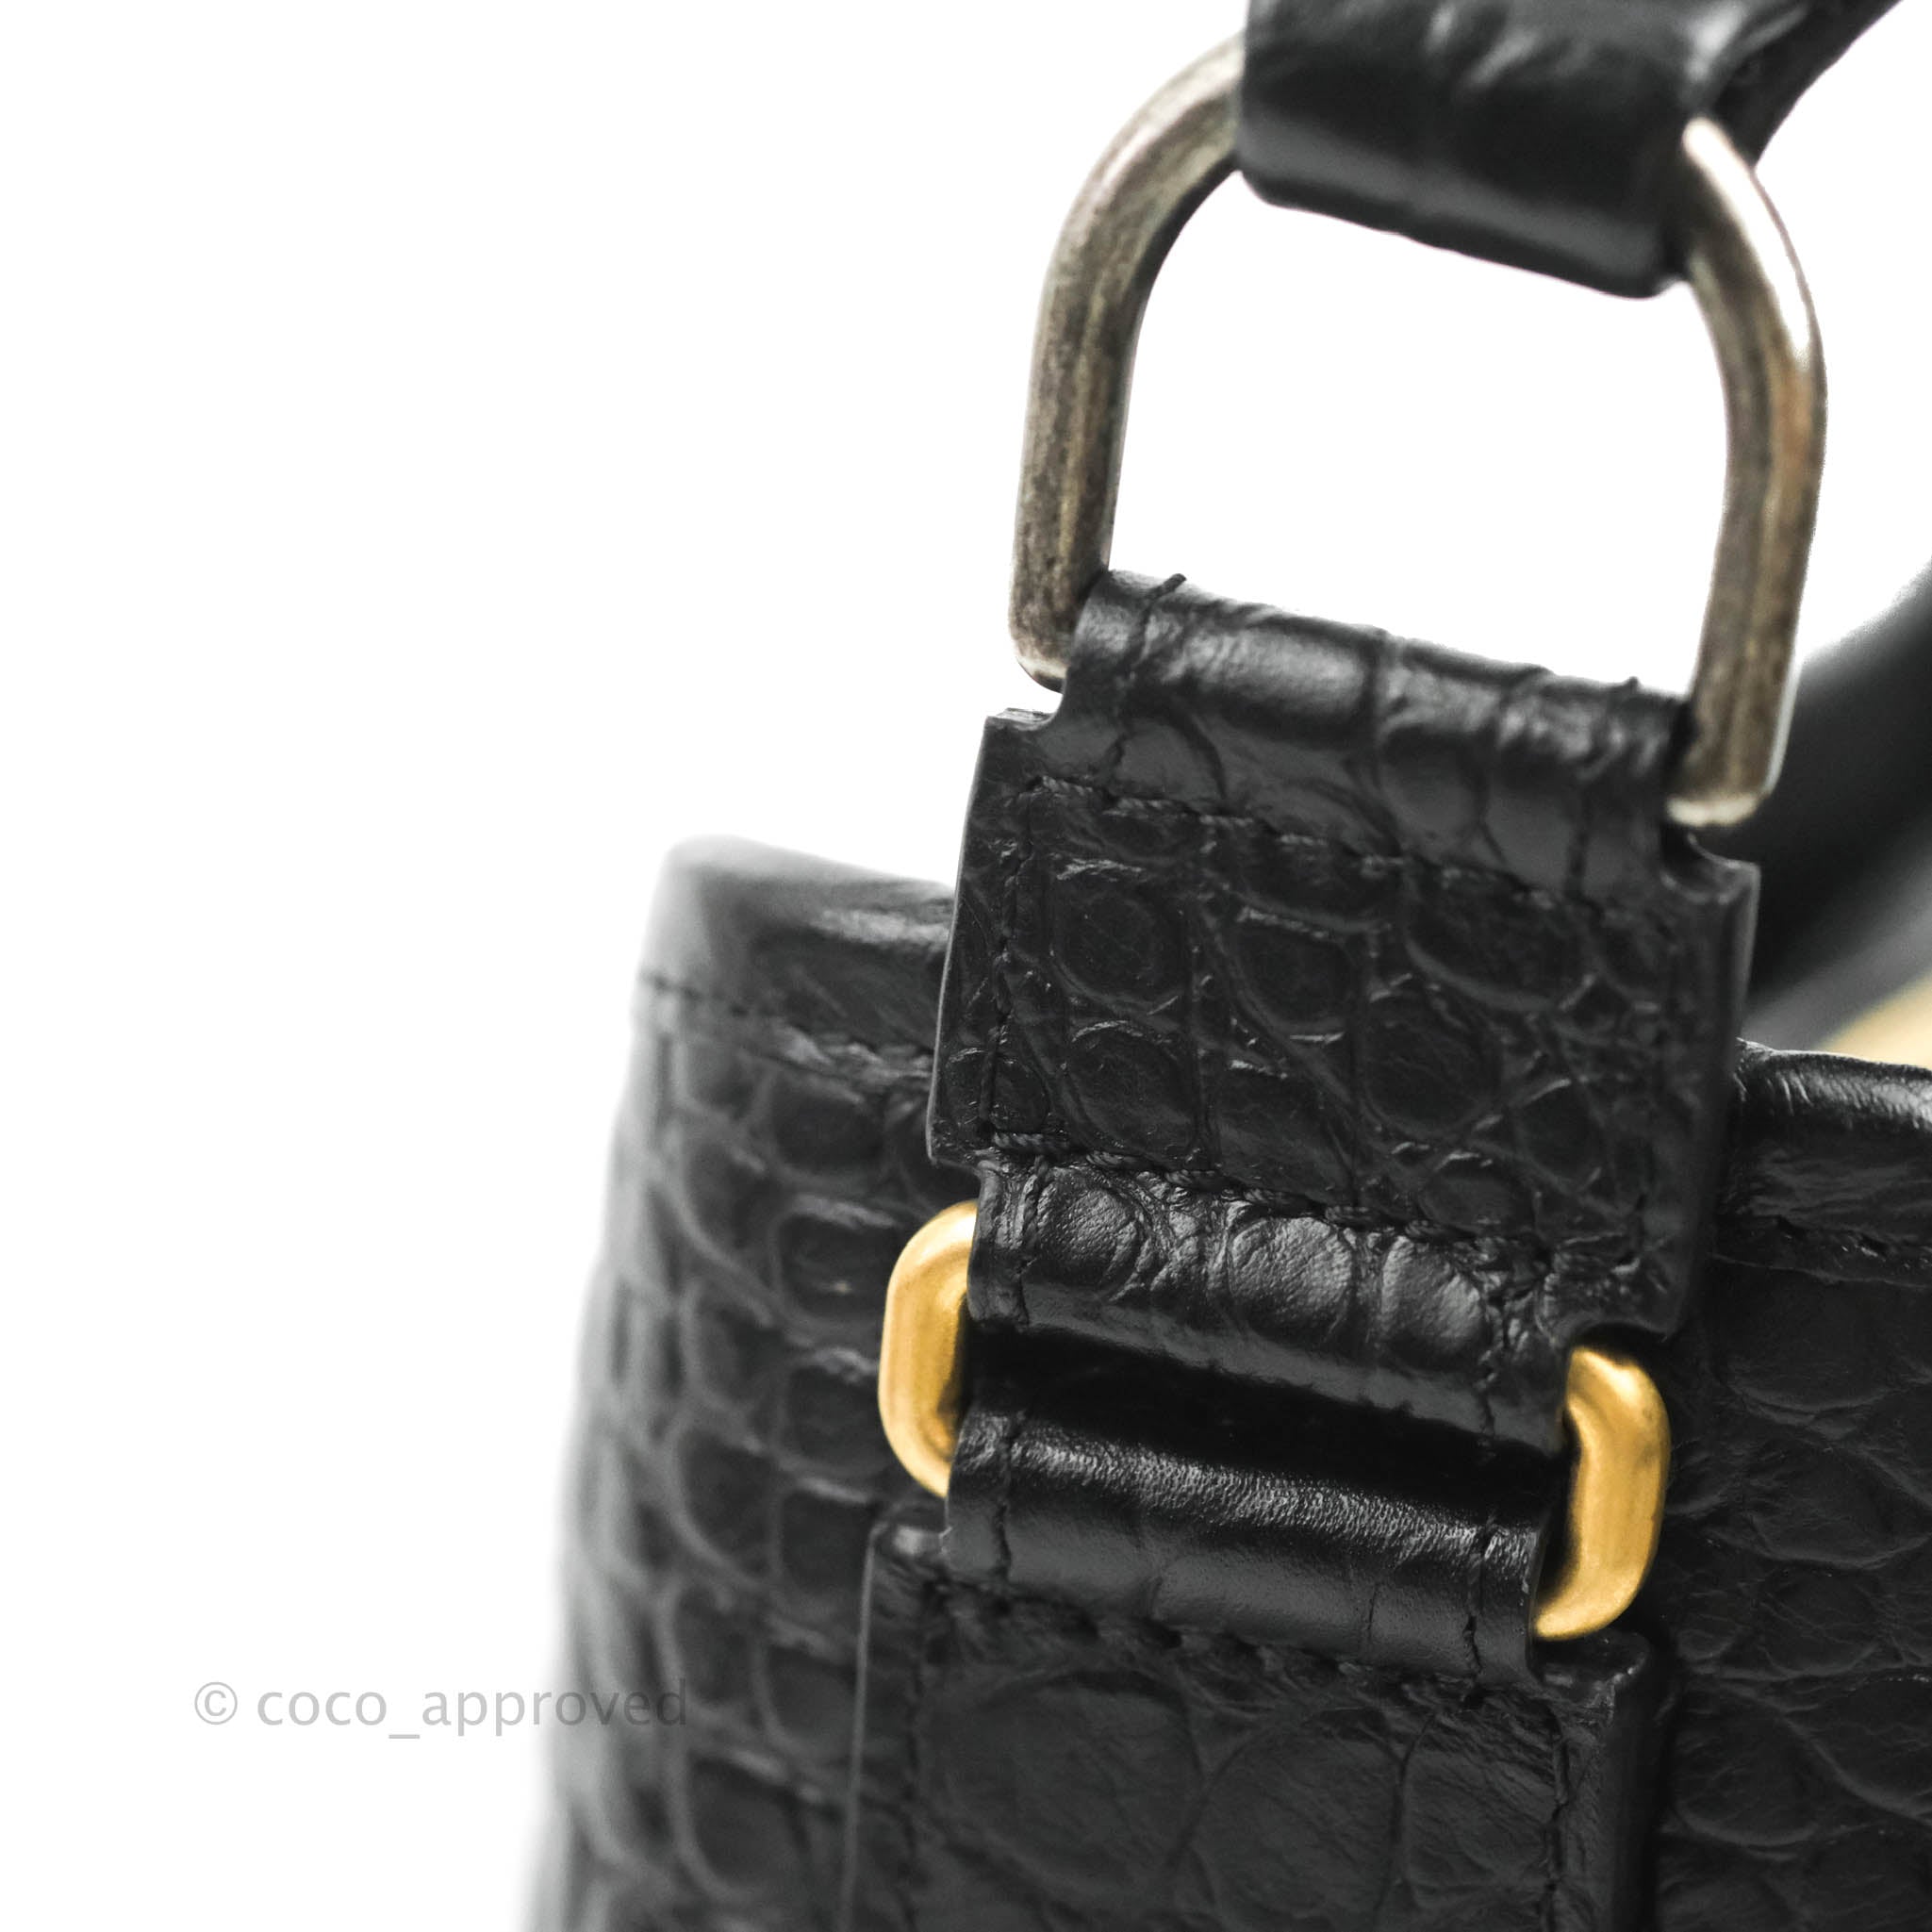 Chanel Crocodile Embossed Calfskin Small Gabrielle Cocodile Hobo Black –  Coco Approved Studio